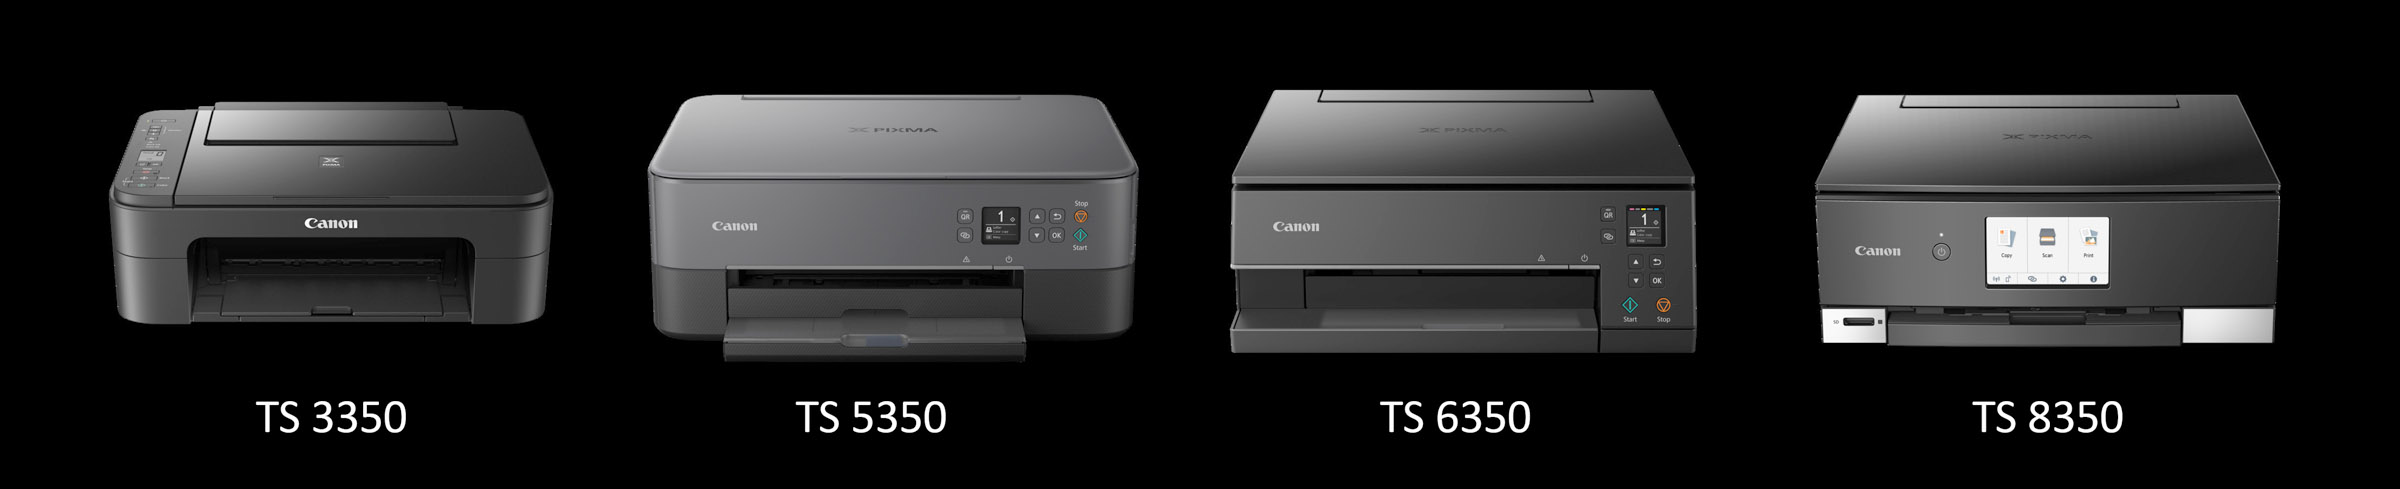 TS-printers-2019